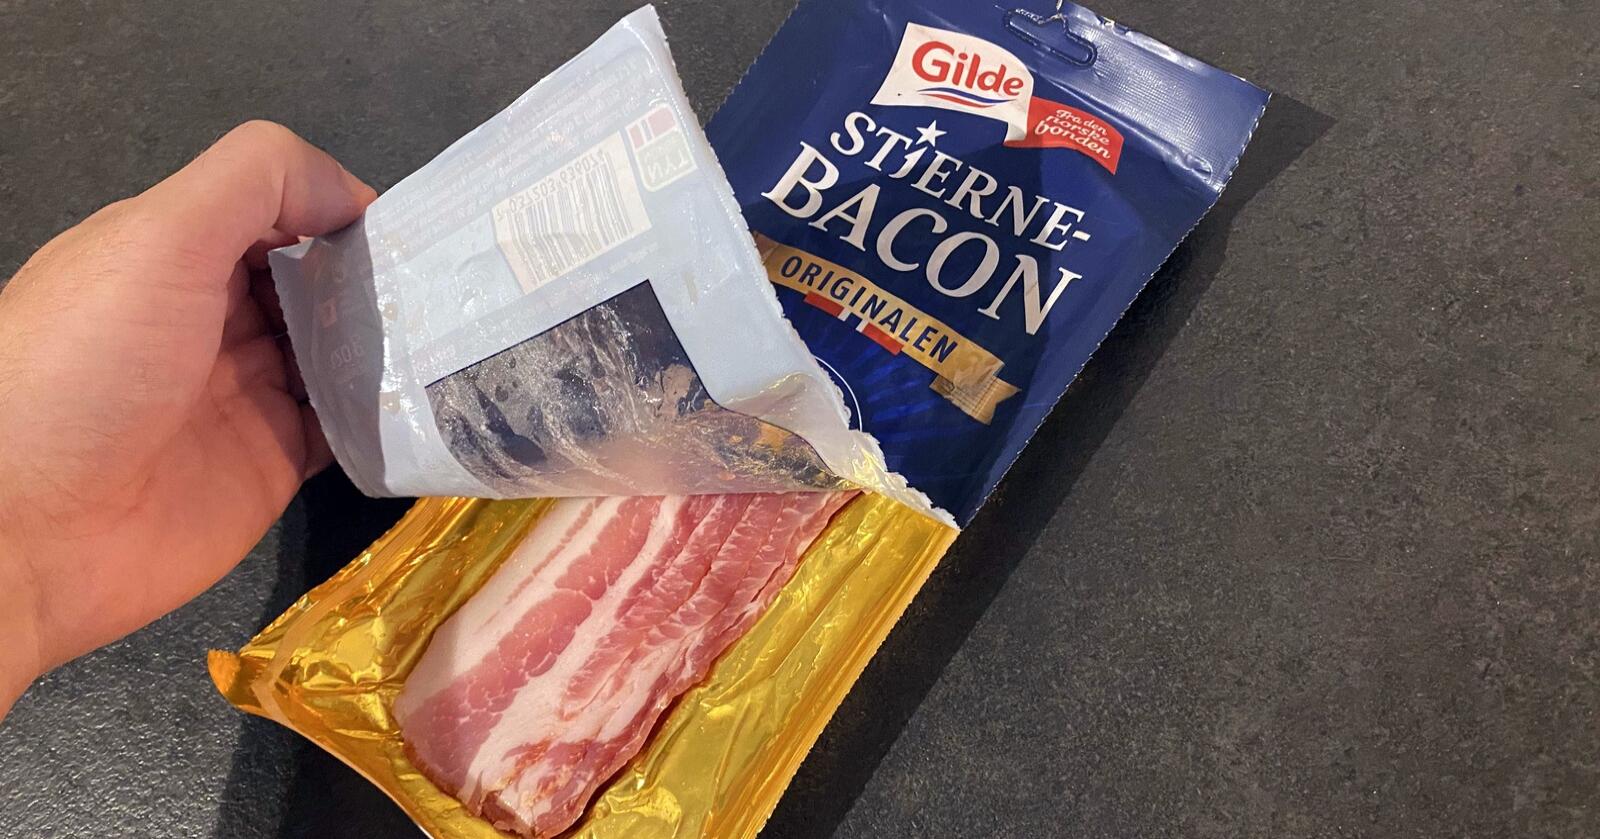 Hvor mange skiver bacon skal det egentlig være i en pakke med Gilde Stjernebacon? Vi har spurt Nortura. Foto: Fredrik Ranheim Lange